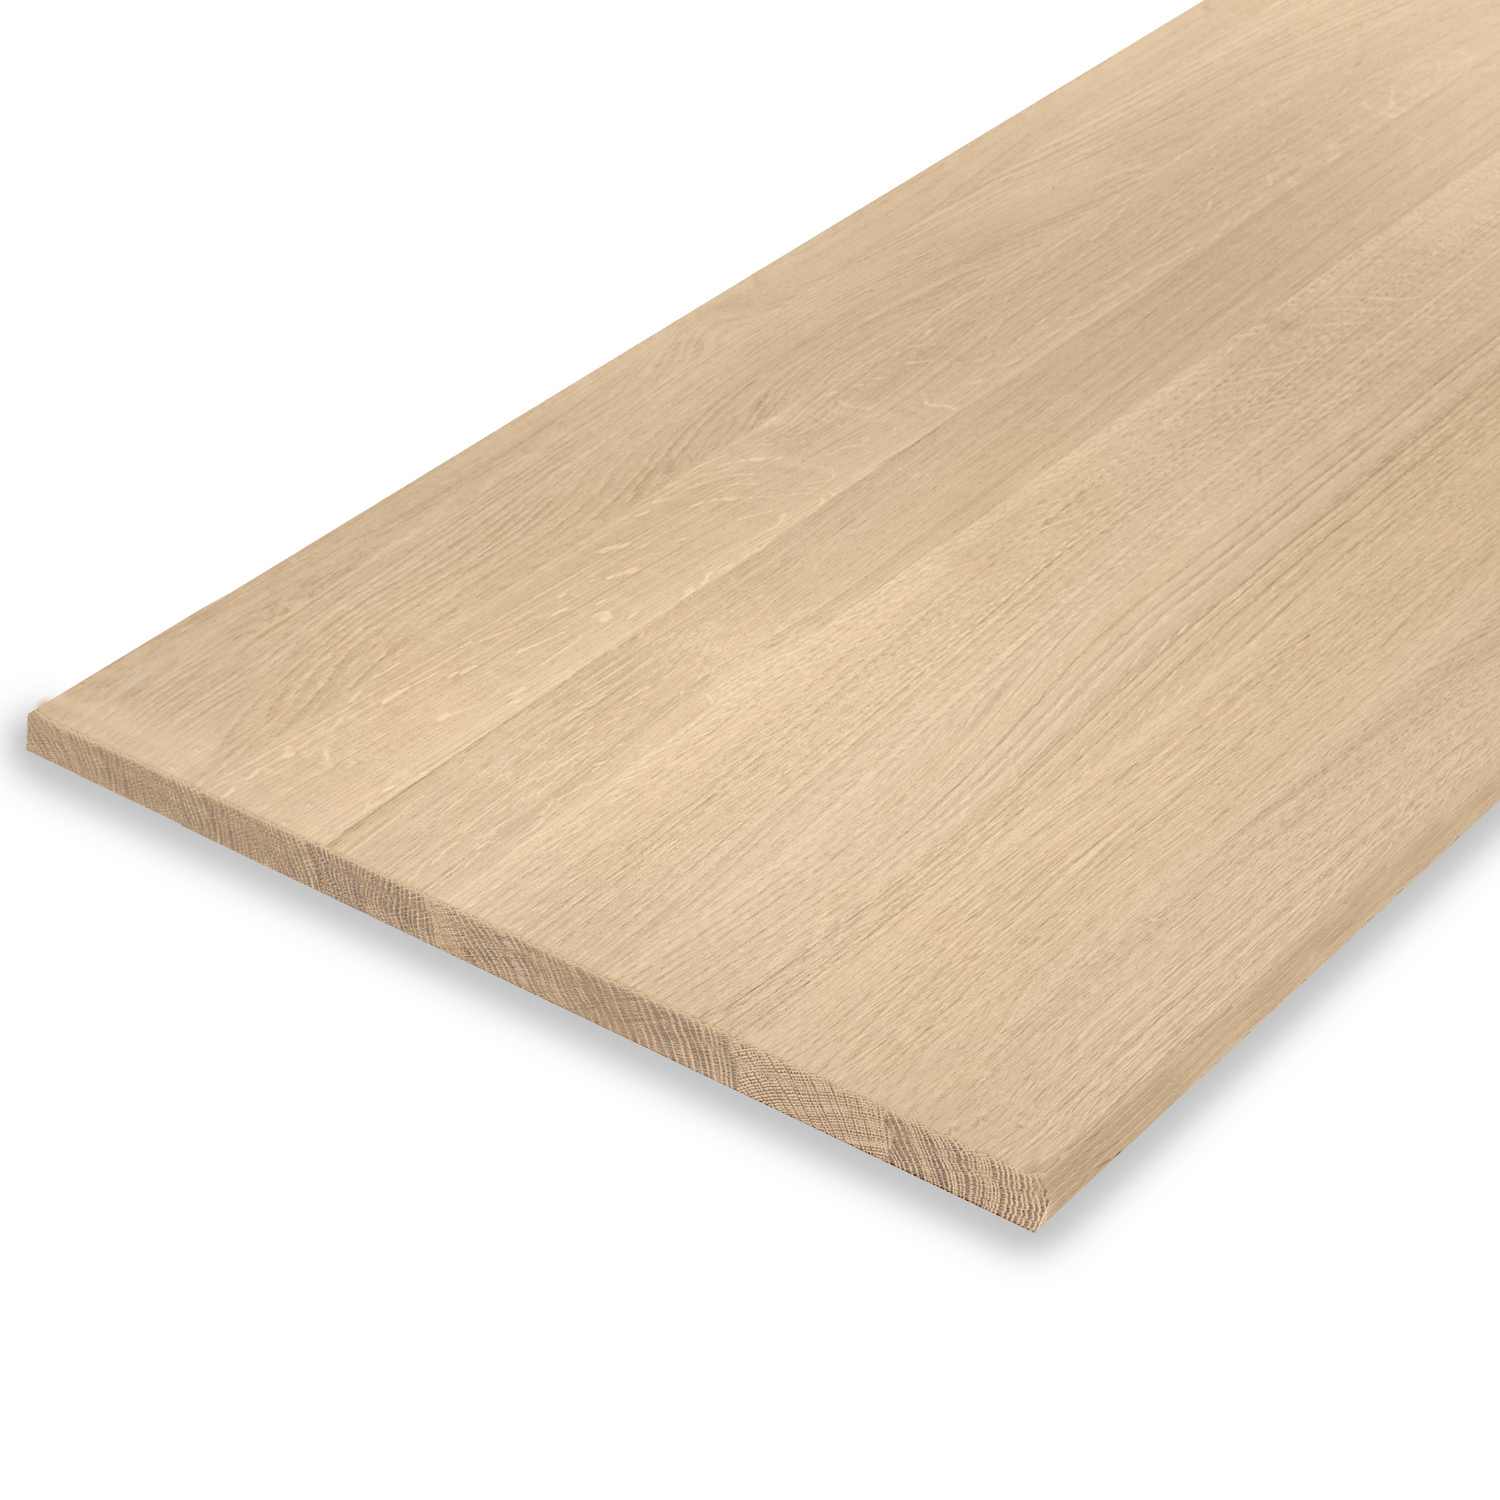  Leimholzplatte Eiche nach Maß - 2 cm dick - Eichenholz A-Qualität- Sandgestrahlt - Eiche Massivholzplatte - verleimt & künstlich getrocknet (HF 8-12%) - 15-120x20-350 cm